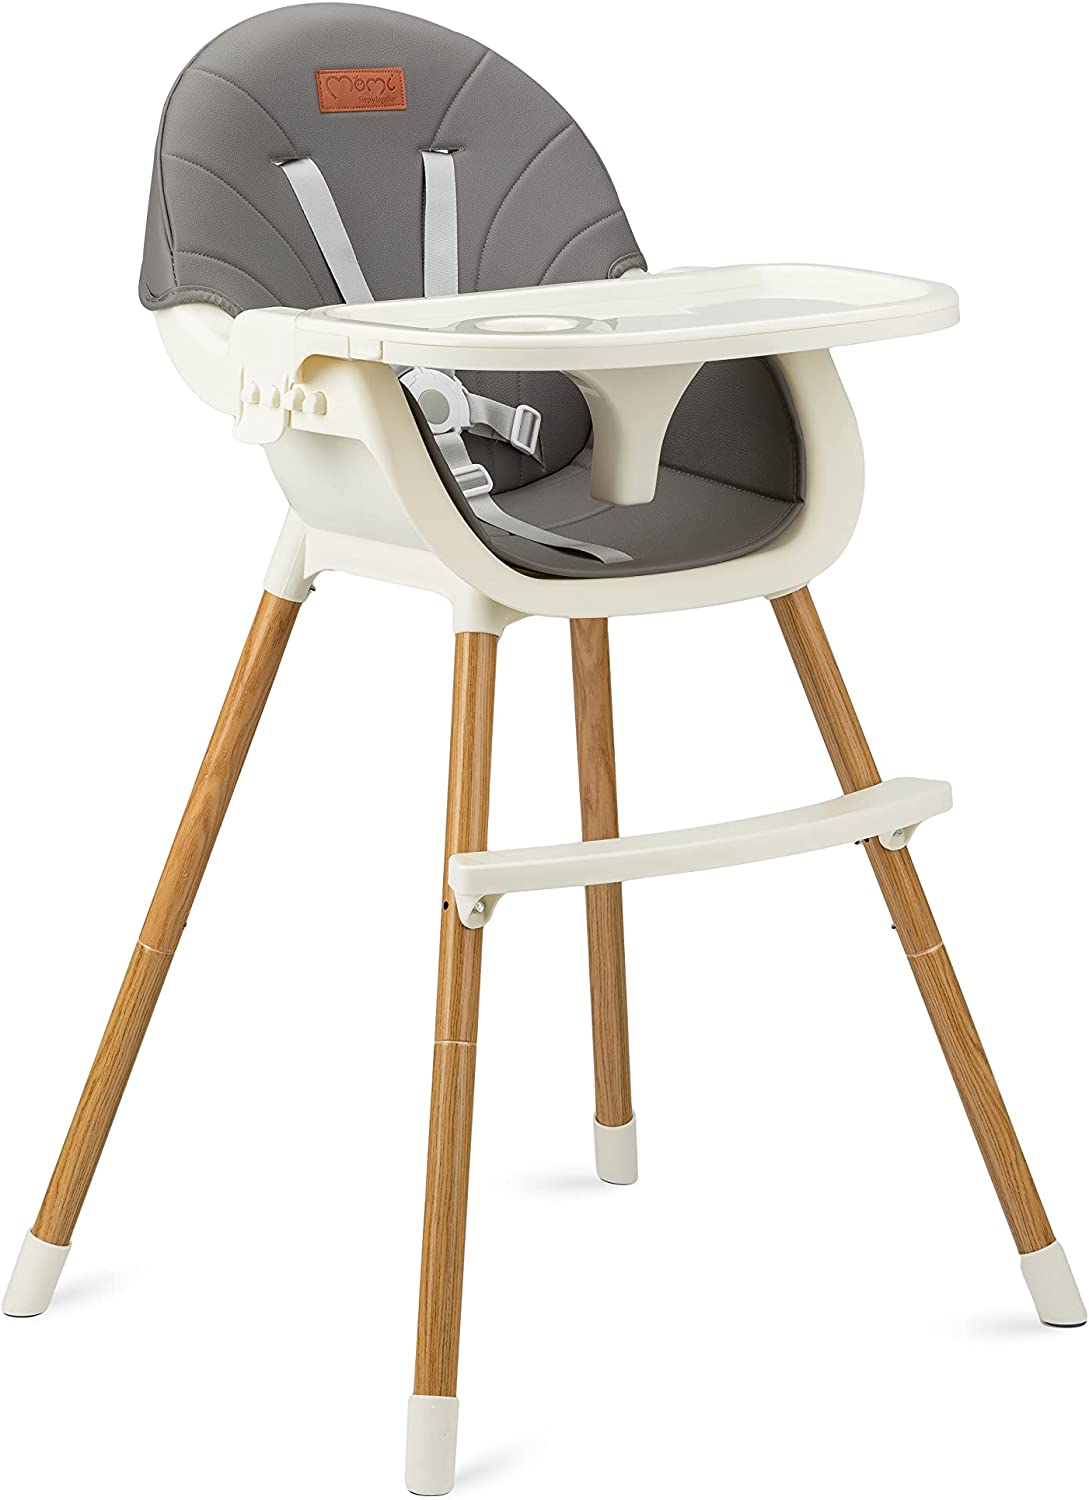 MoMi FLOVI Feeding Chair | 3-in-1 Product Black/Grey